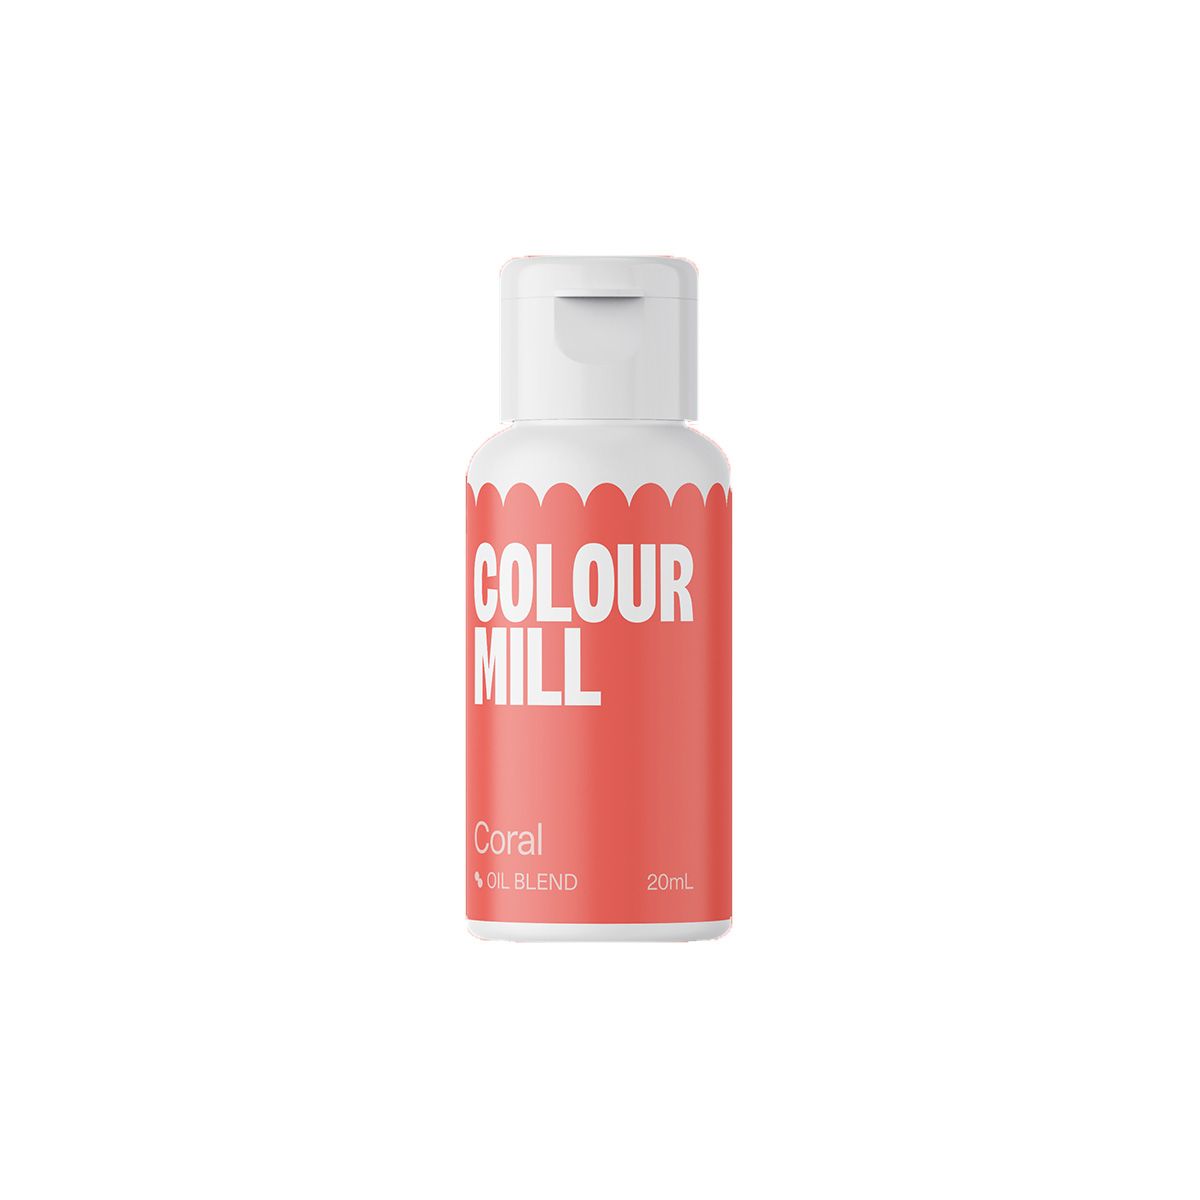 Χρώμα Coral Colour Mill 20ml